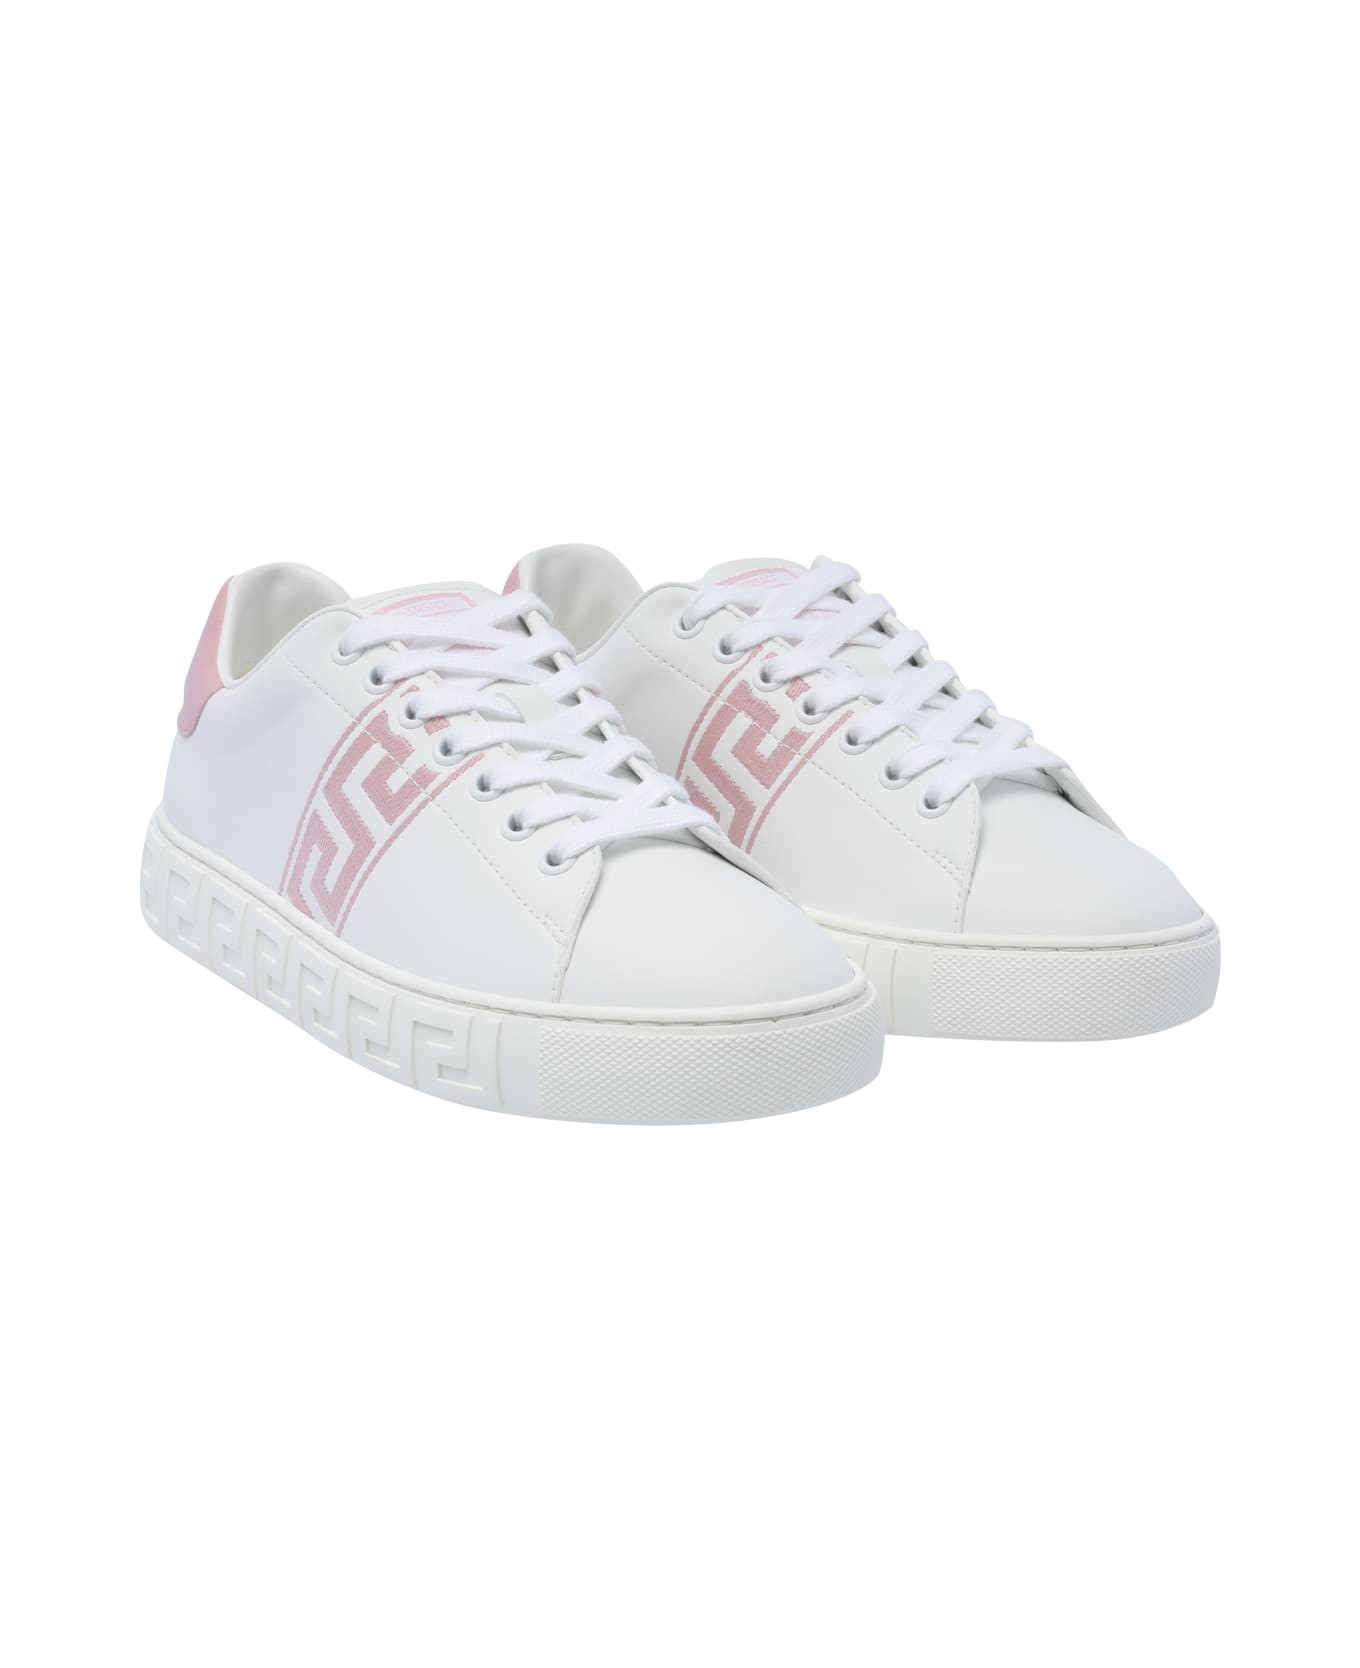 Versace Greca Sneakers - Pink